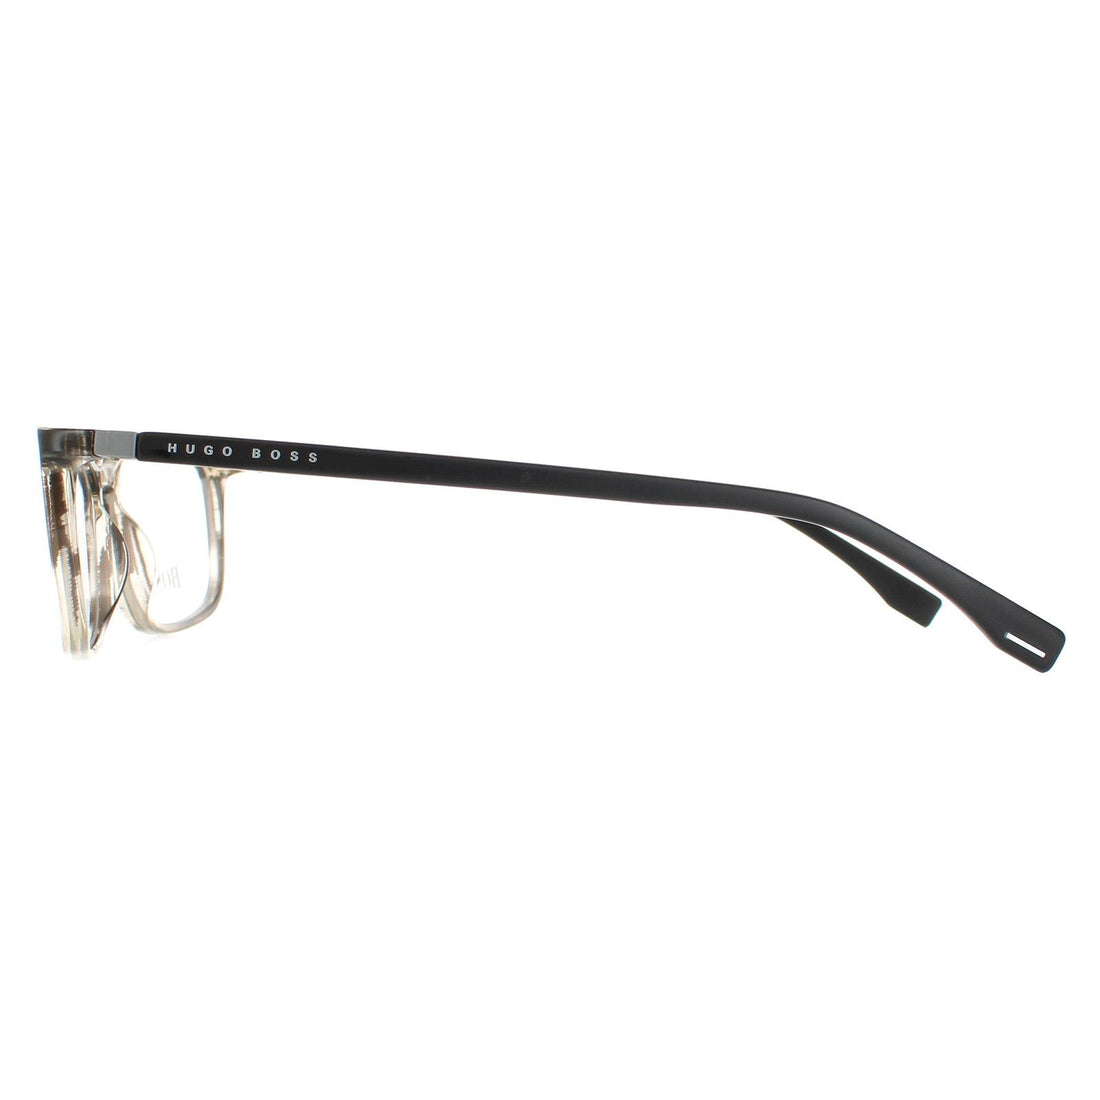 Hugo Boss BOSS 0963 Glasses Frames